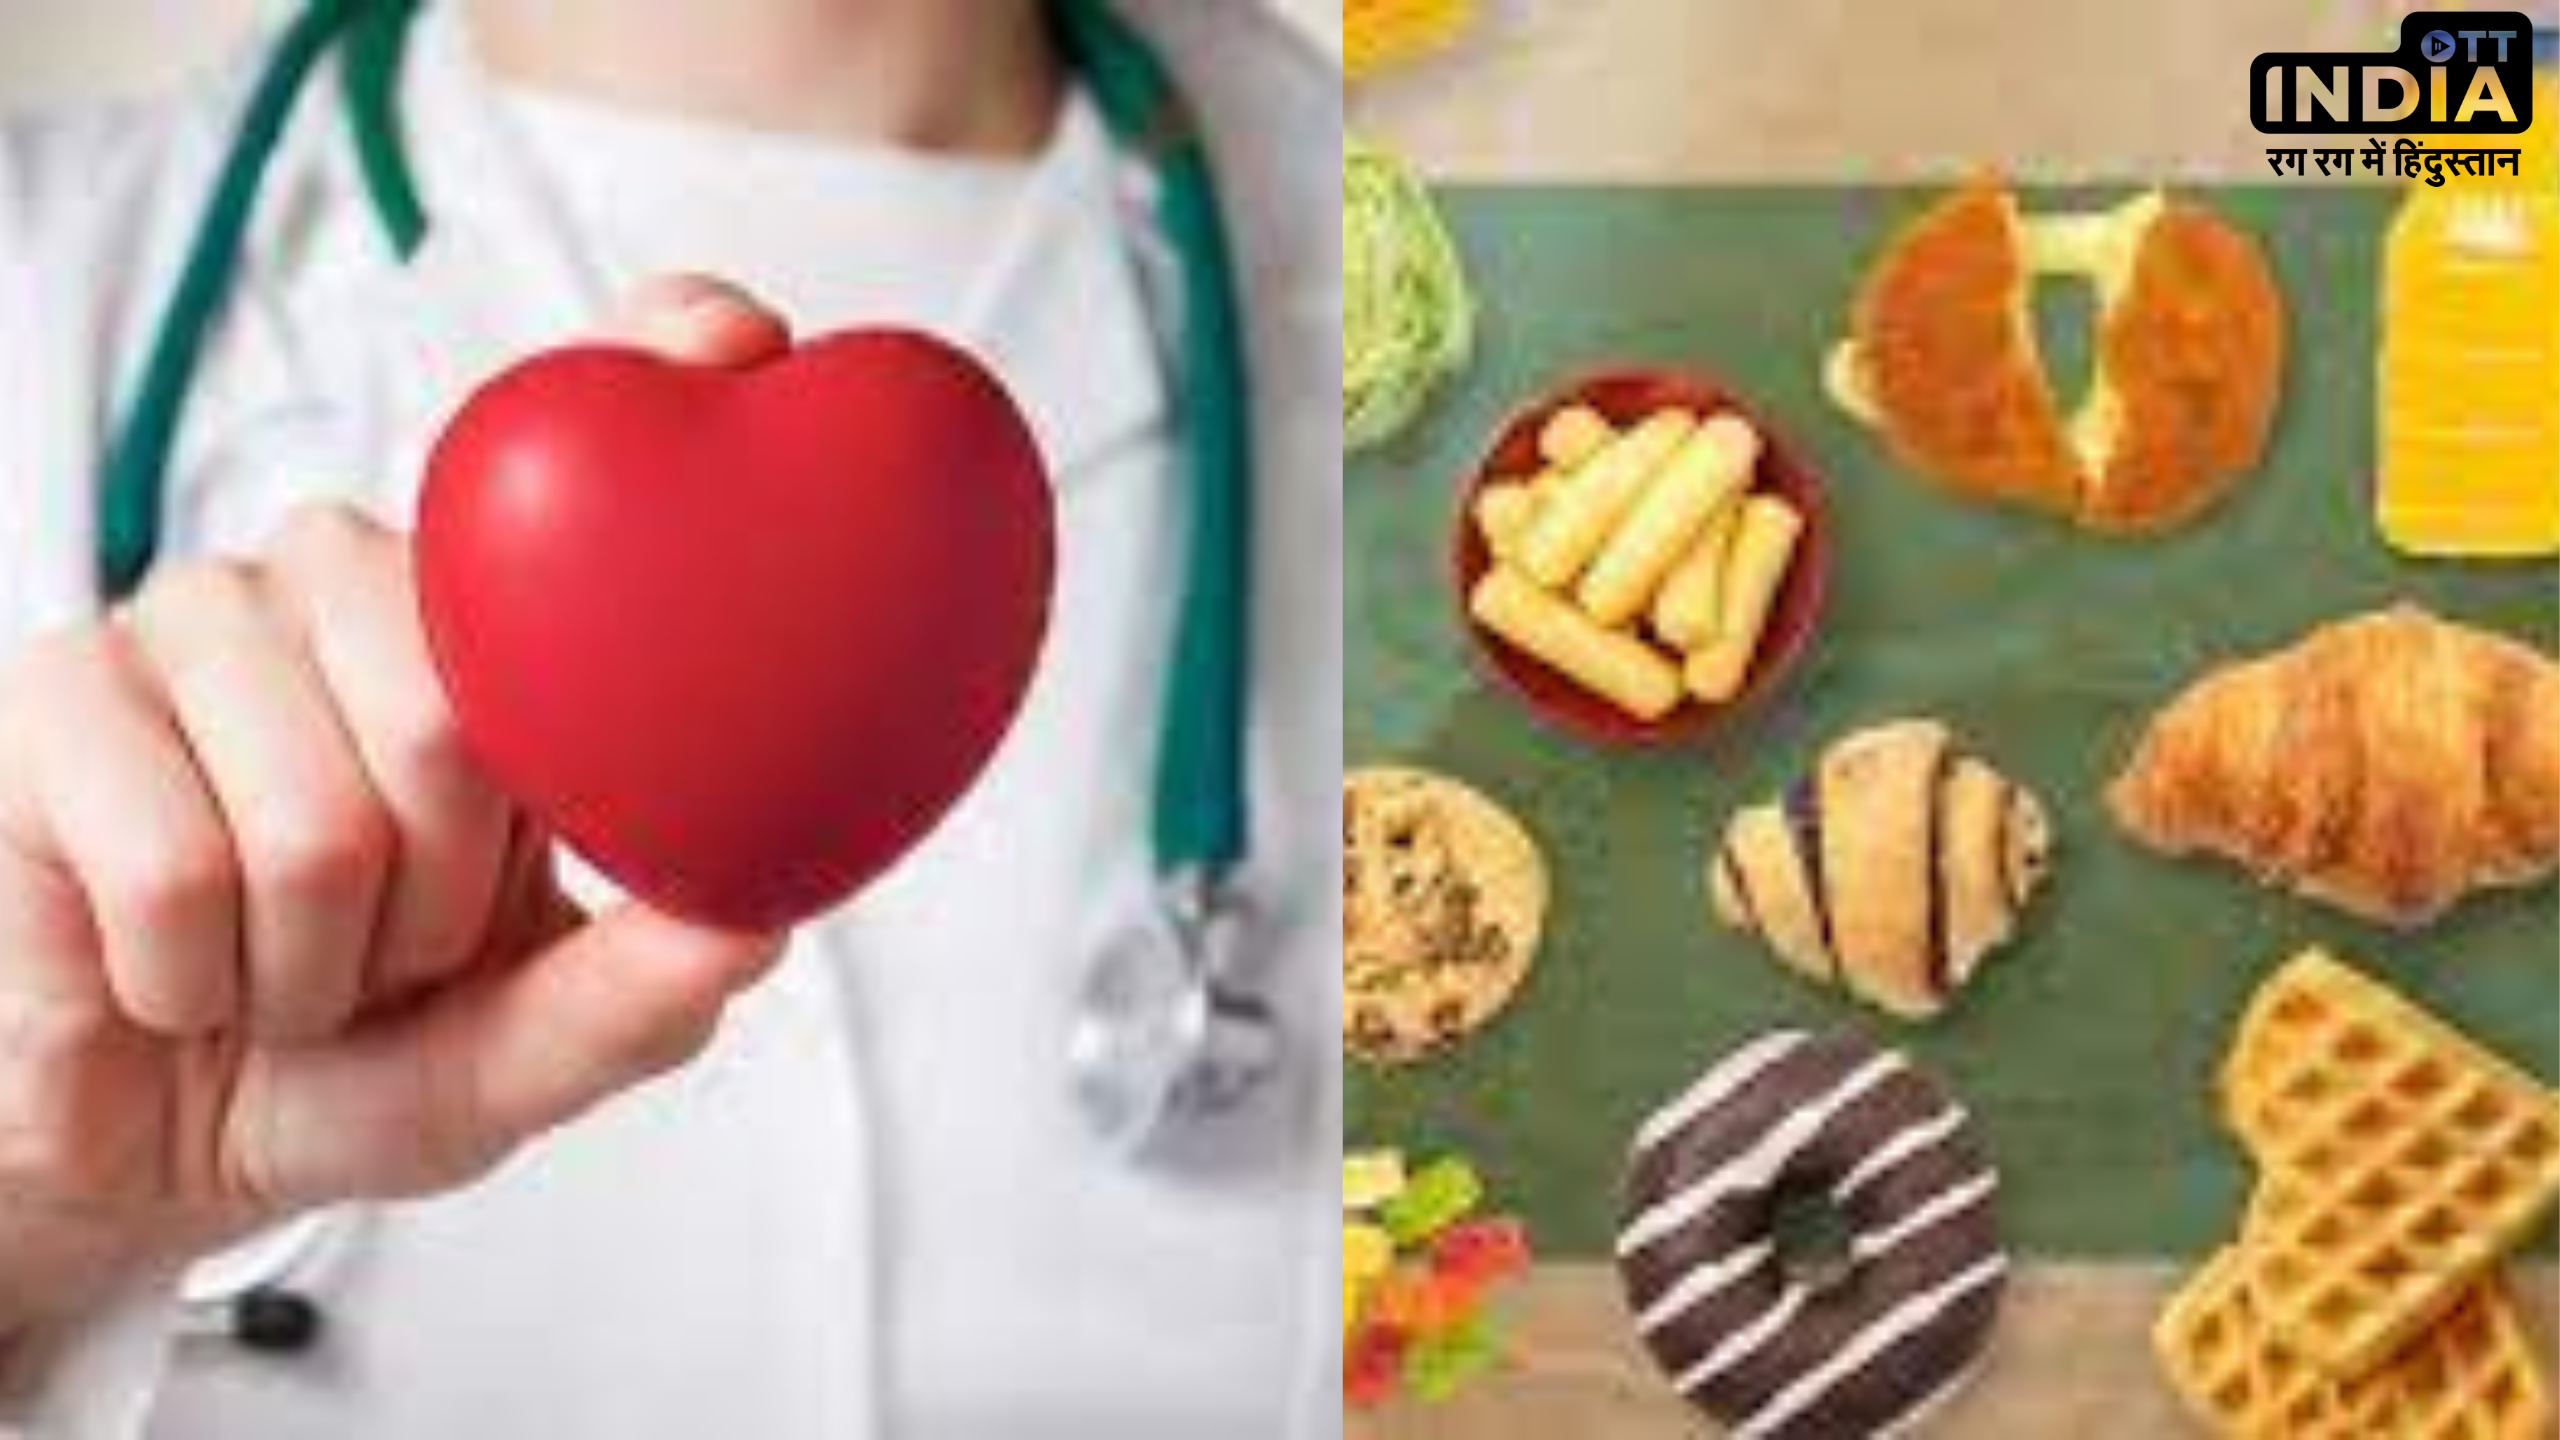 Foods to Avoid For Heart Health: हार्ट के मरीज़ हैं तो भूलकर भी ना करें इन फ़ूड आइटम्स का सेवन, देख लें लिस्ट